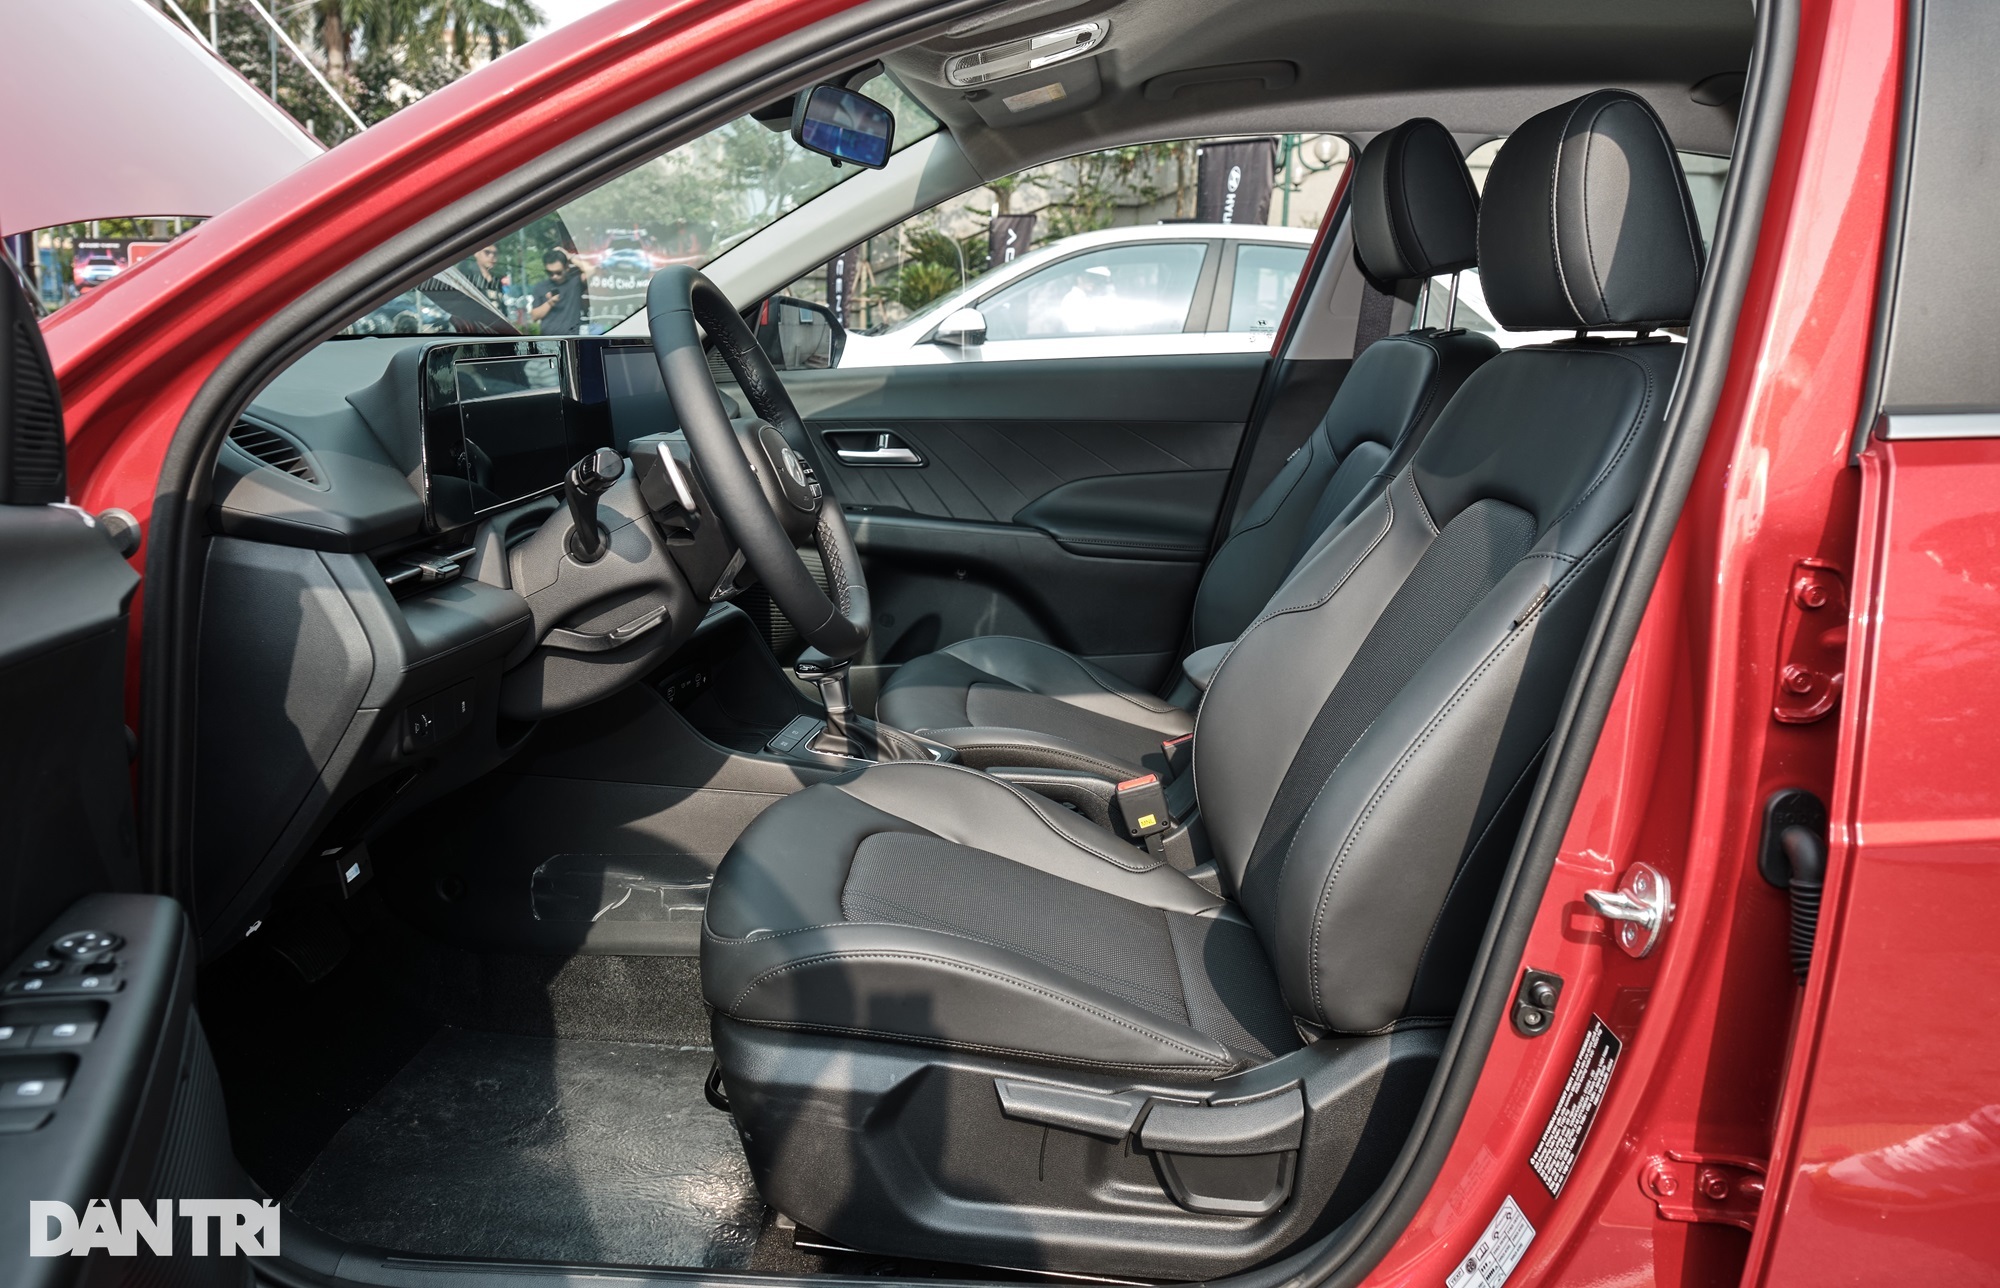 Tại phân khúc sedan hạng B, không có sản phẩm nào được trang bị ghế chỉnh điện nên việc Hyundai Accent 2024 mới chỉ có thể chỉnh cơ cũng không quá ảnh hưởng đến trải nghiệm của người dùng (Ảnh: Nguyễn Lâm).